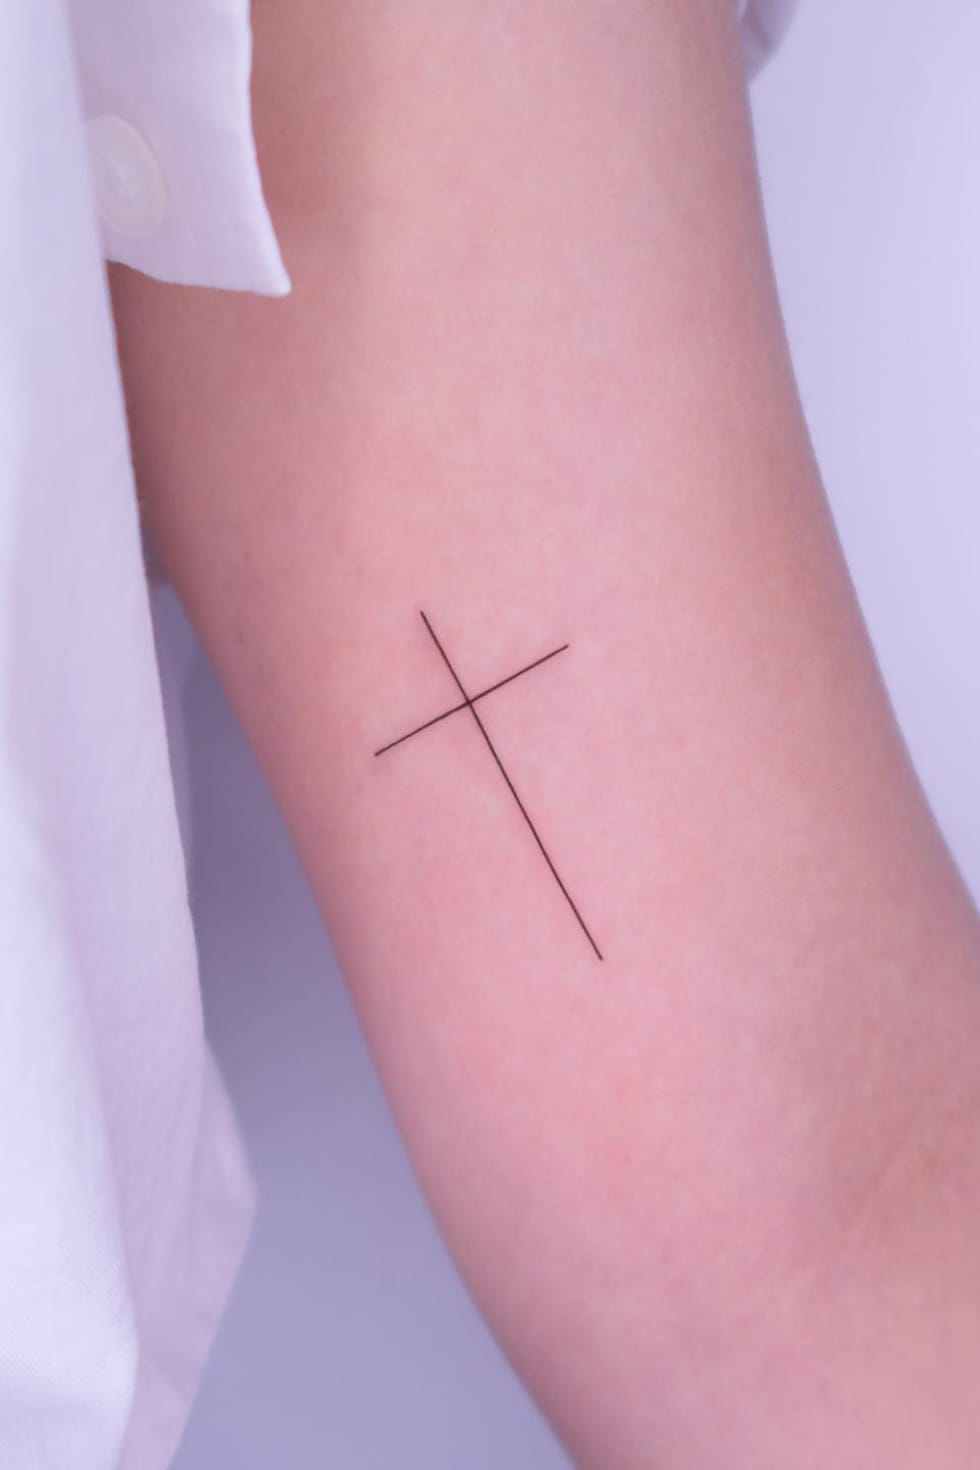 Minimalist Small Cross Tattoo